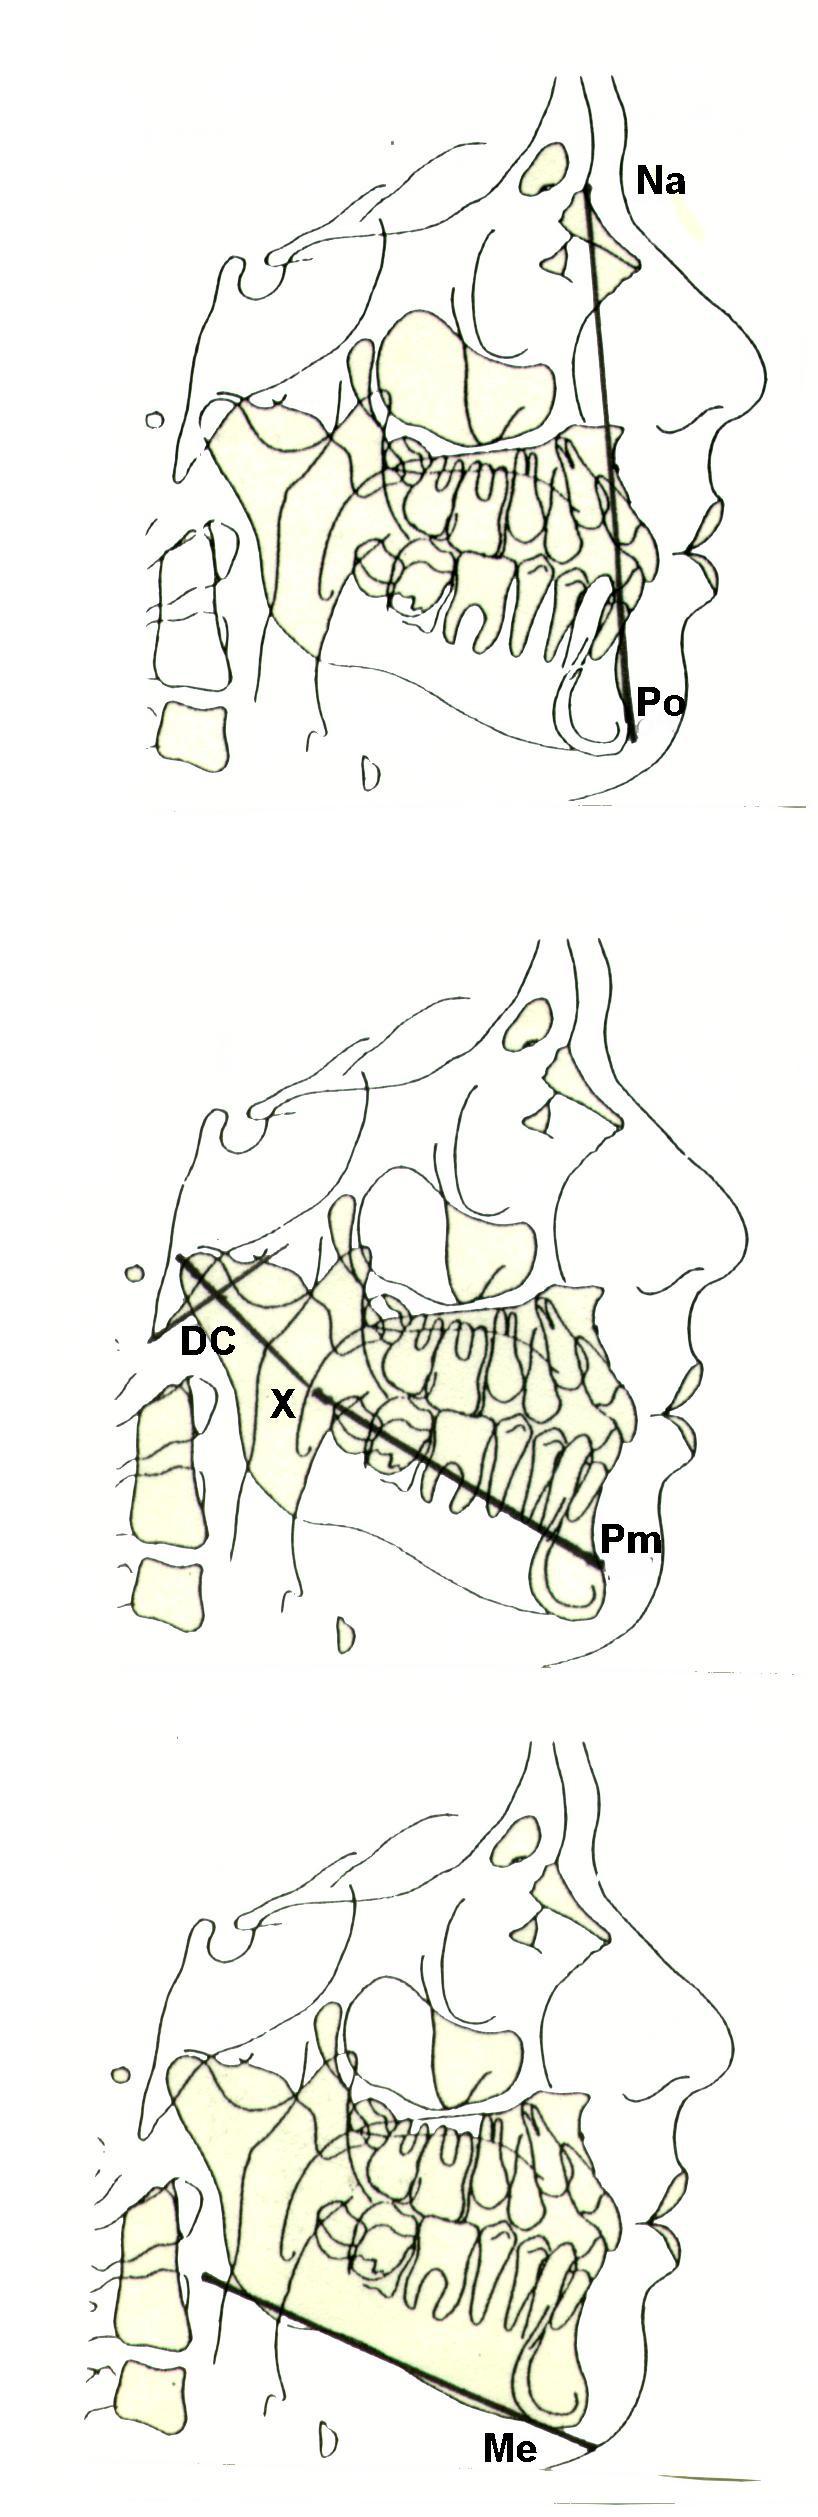 PLANO FACIAL NA - PO El plano facial permite apreciar el contorno del perfil esqueletal y de deducir su concavidad o convexidad.